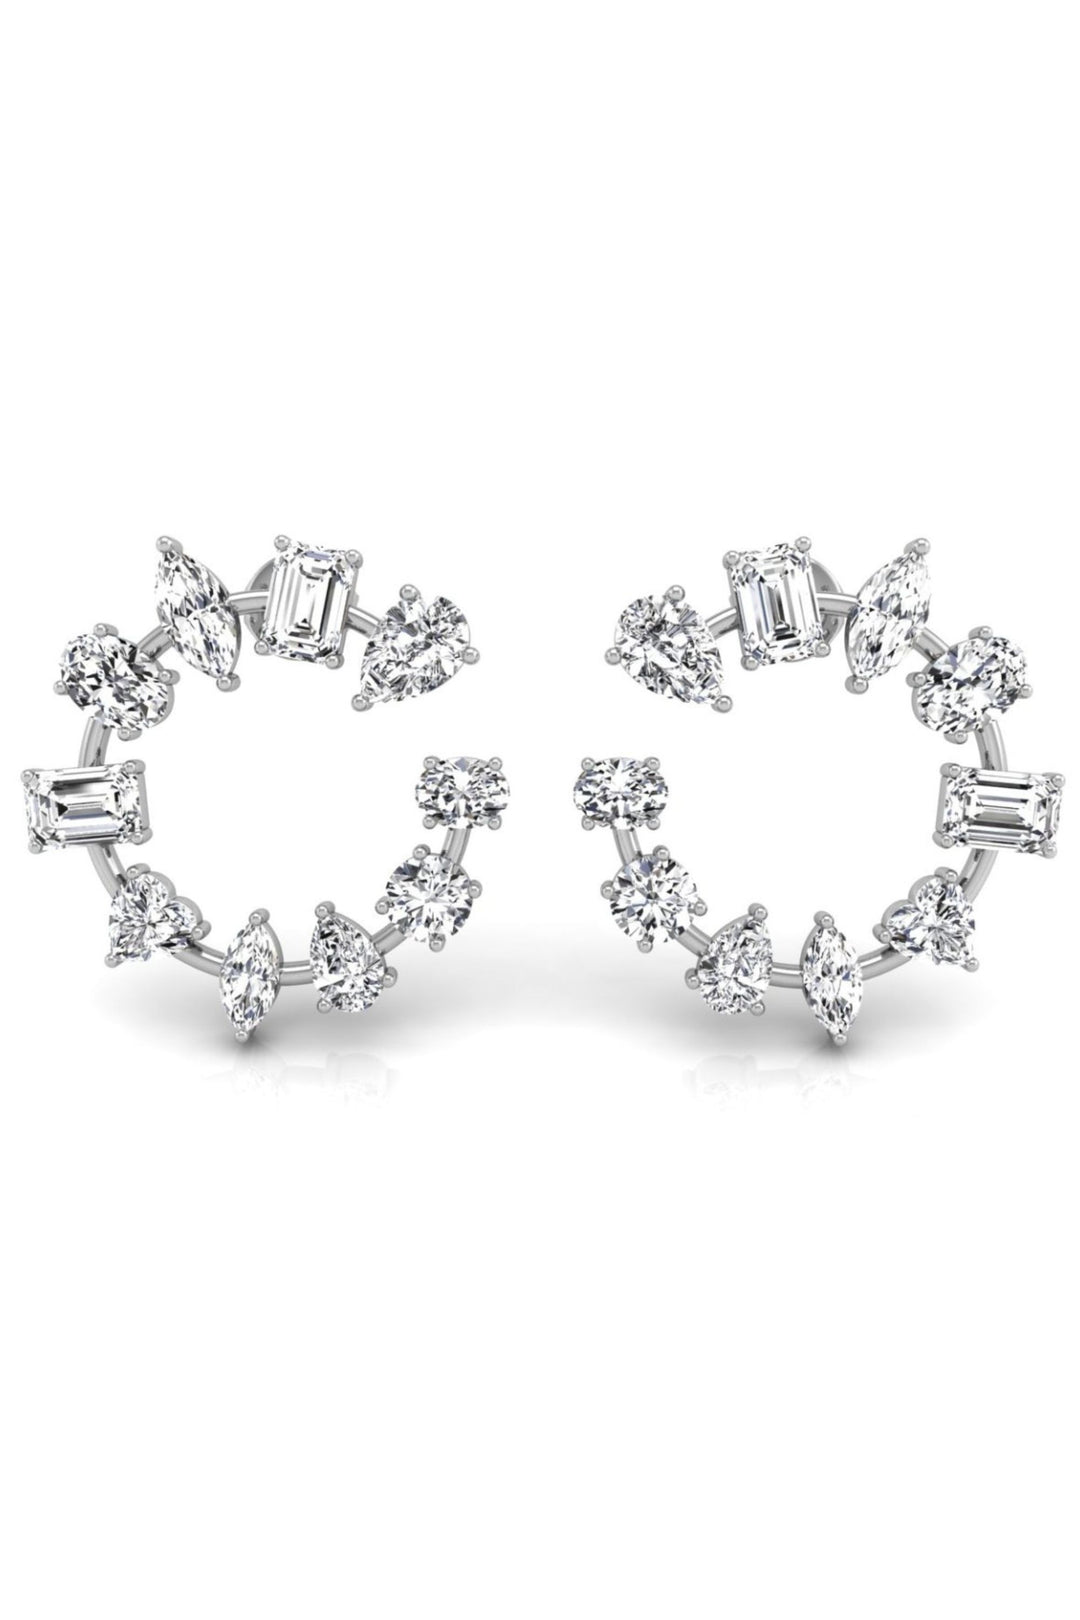 Multi Shaped Diamond Moissanite Round Earrings for Women